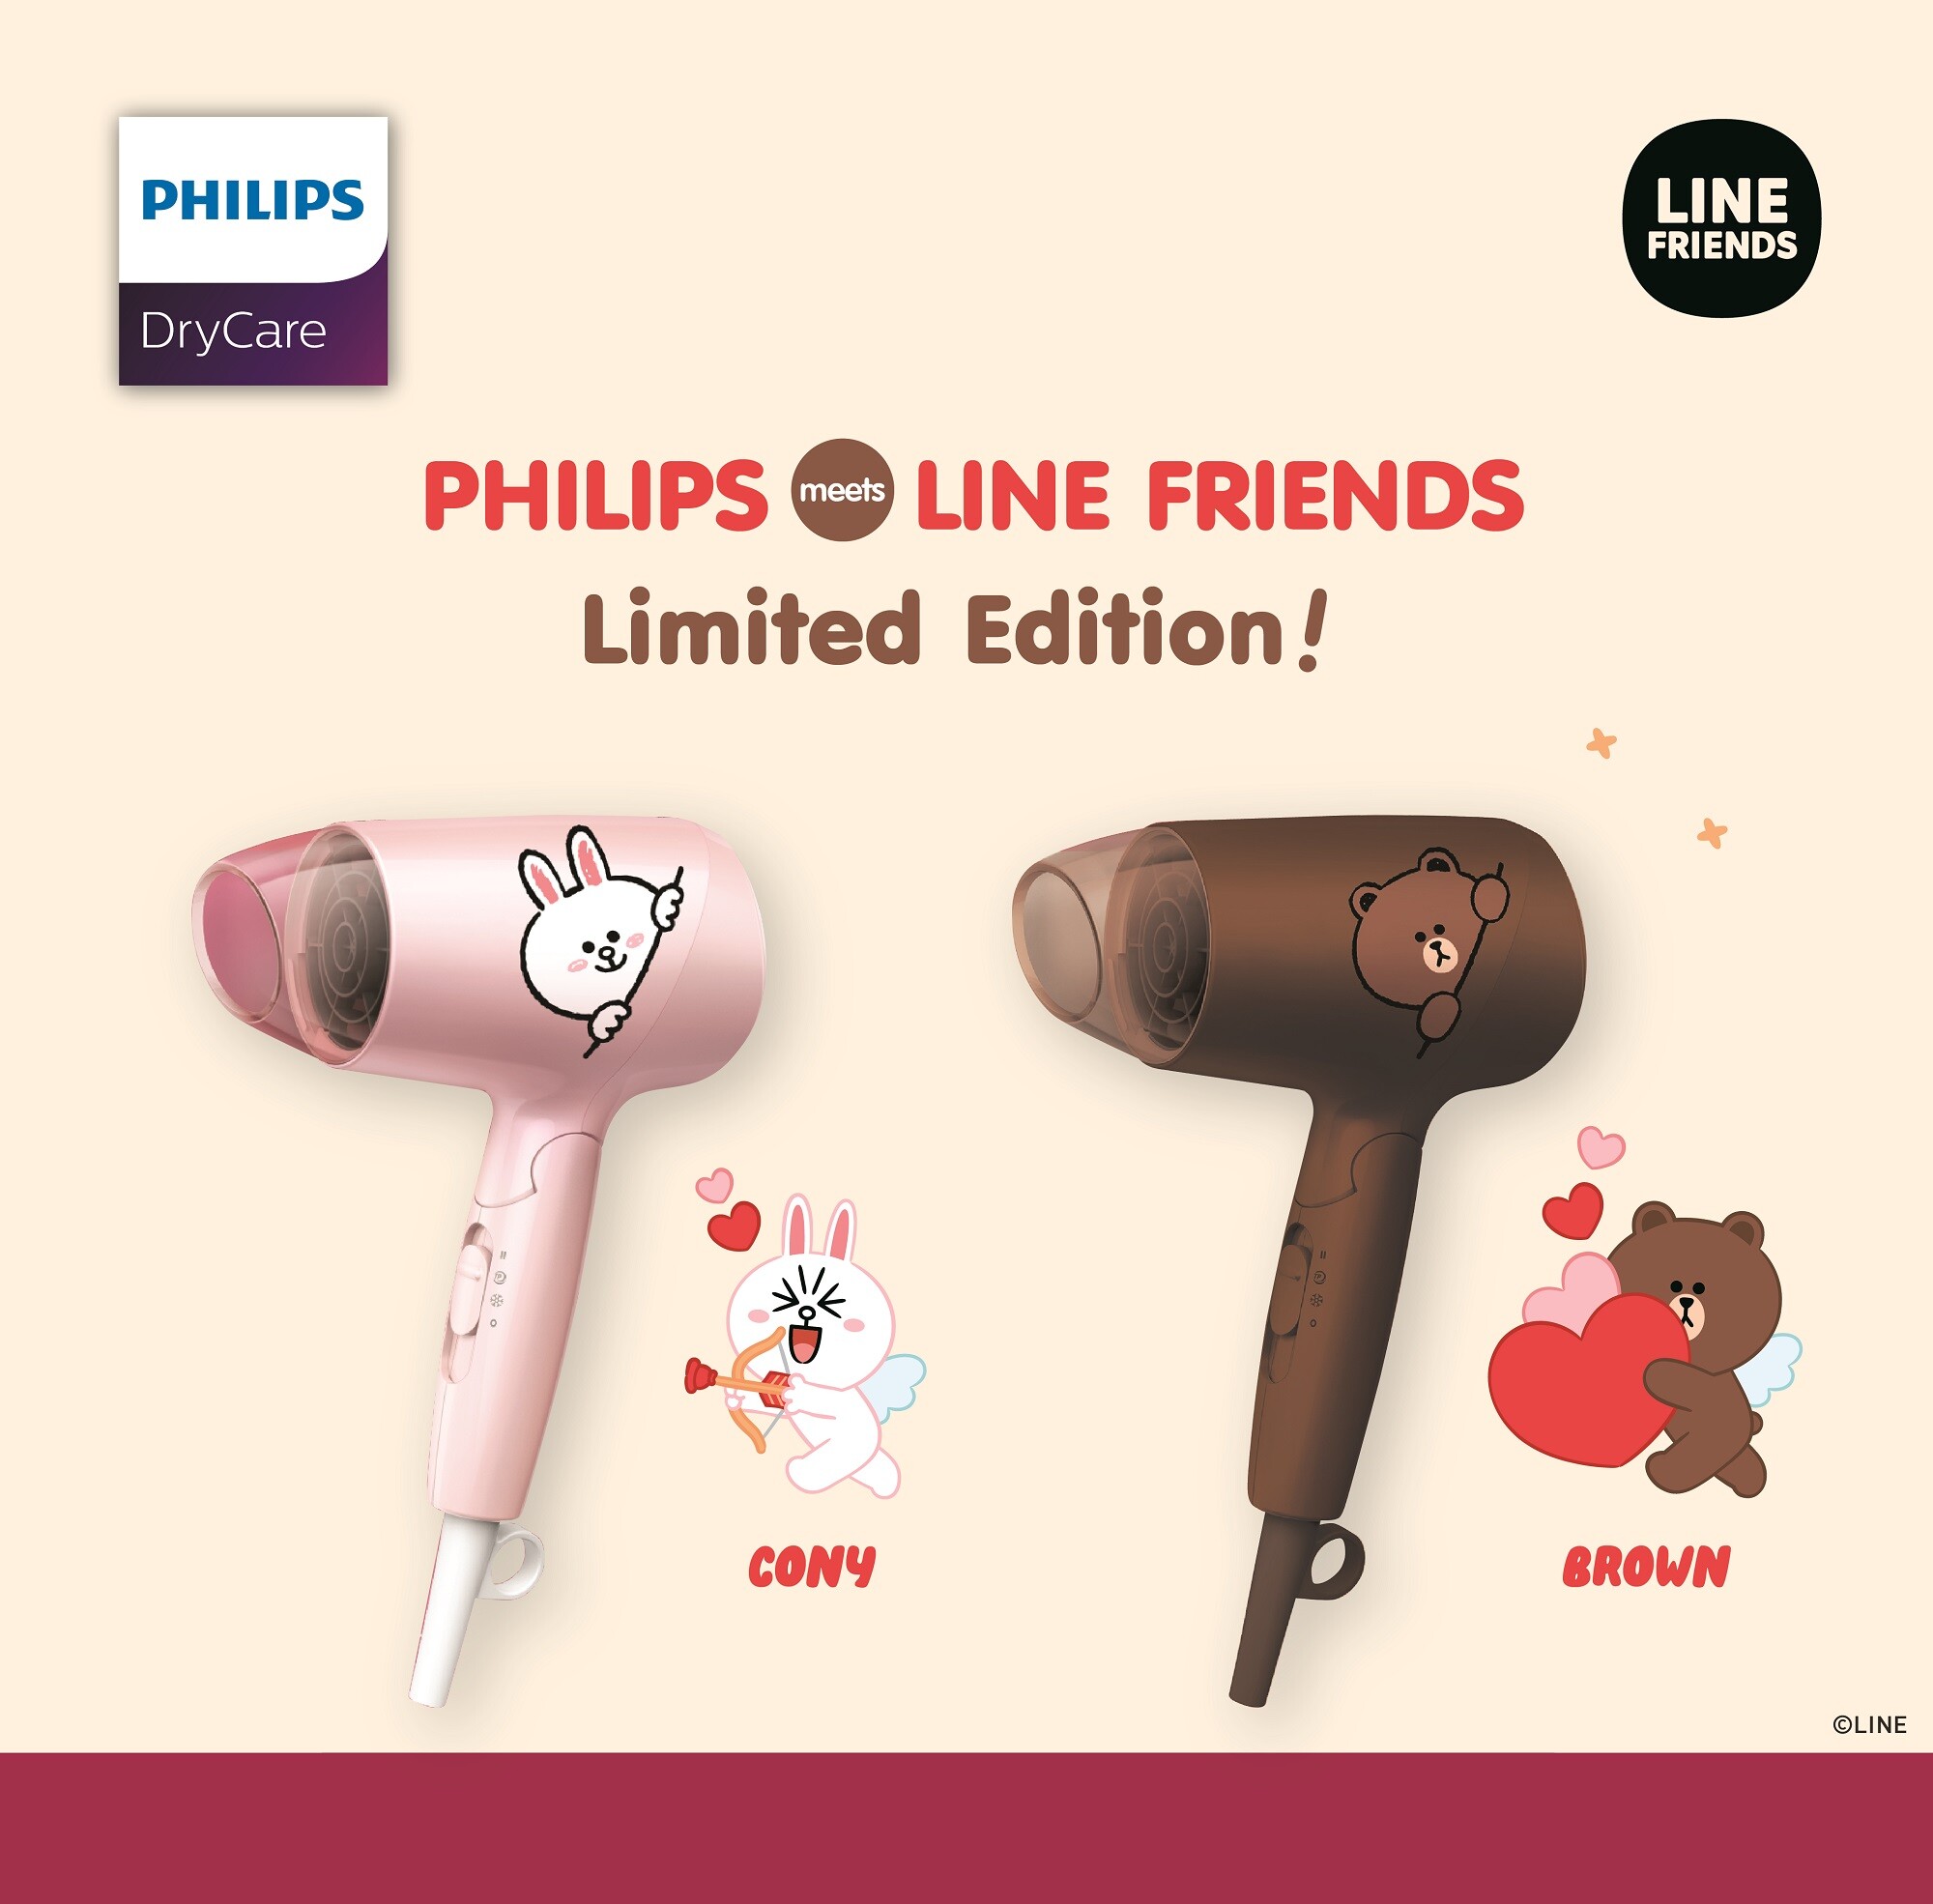 ฟิลิปส์ จับมือ ไลน์ เฟรนด์ เปิดตัวไดร์เป่าผมสุดคิวท์  “Philips Meets LINE FRIENDS Limited Edition” ไอเท็มเด็ดที่สาวกไลน์ เฟรนด์ ต้องไม่พลาด